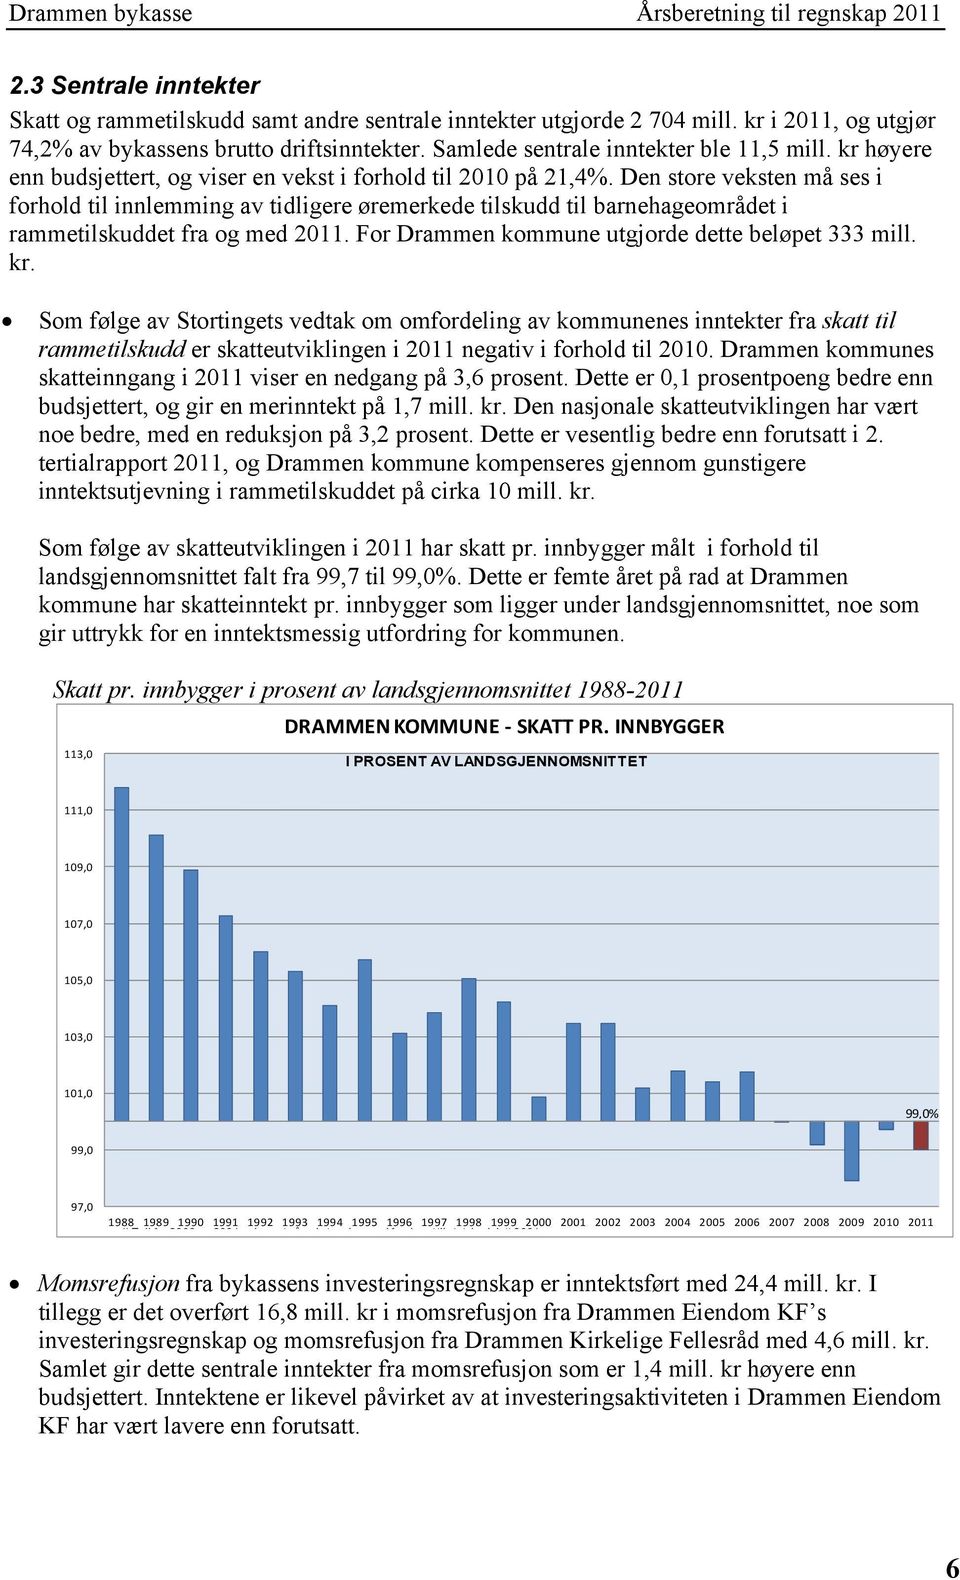 Den store veksten må ses i forhold til innlemming av tidligere øremerkede tilskudd til barnehageområdet i rammetilskuddet fra og med 2011. For Drammen kommune utgjorde dette beløpet 333 mill. kr.